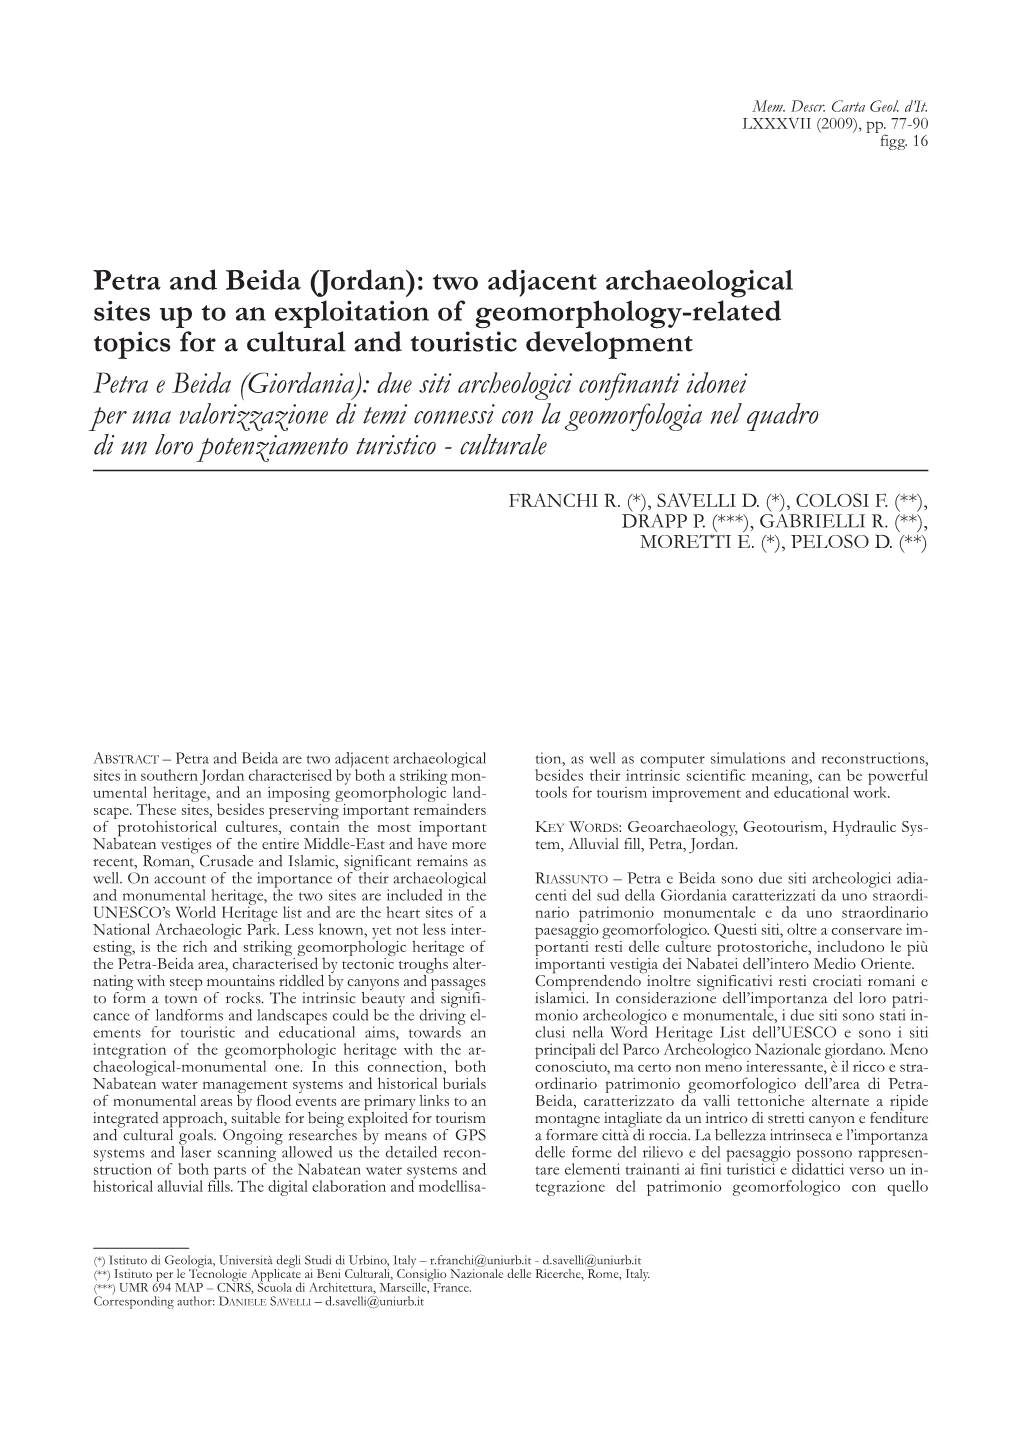 Petra and Beida (Jordan): Two Adjacent Archaeological